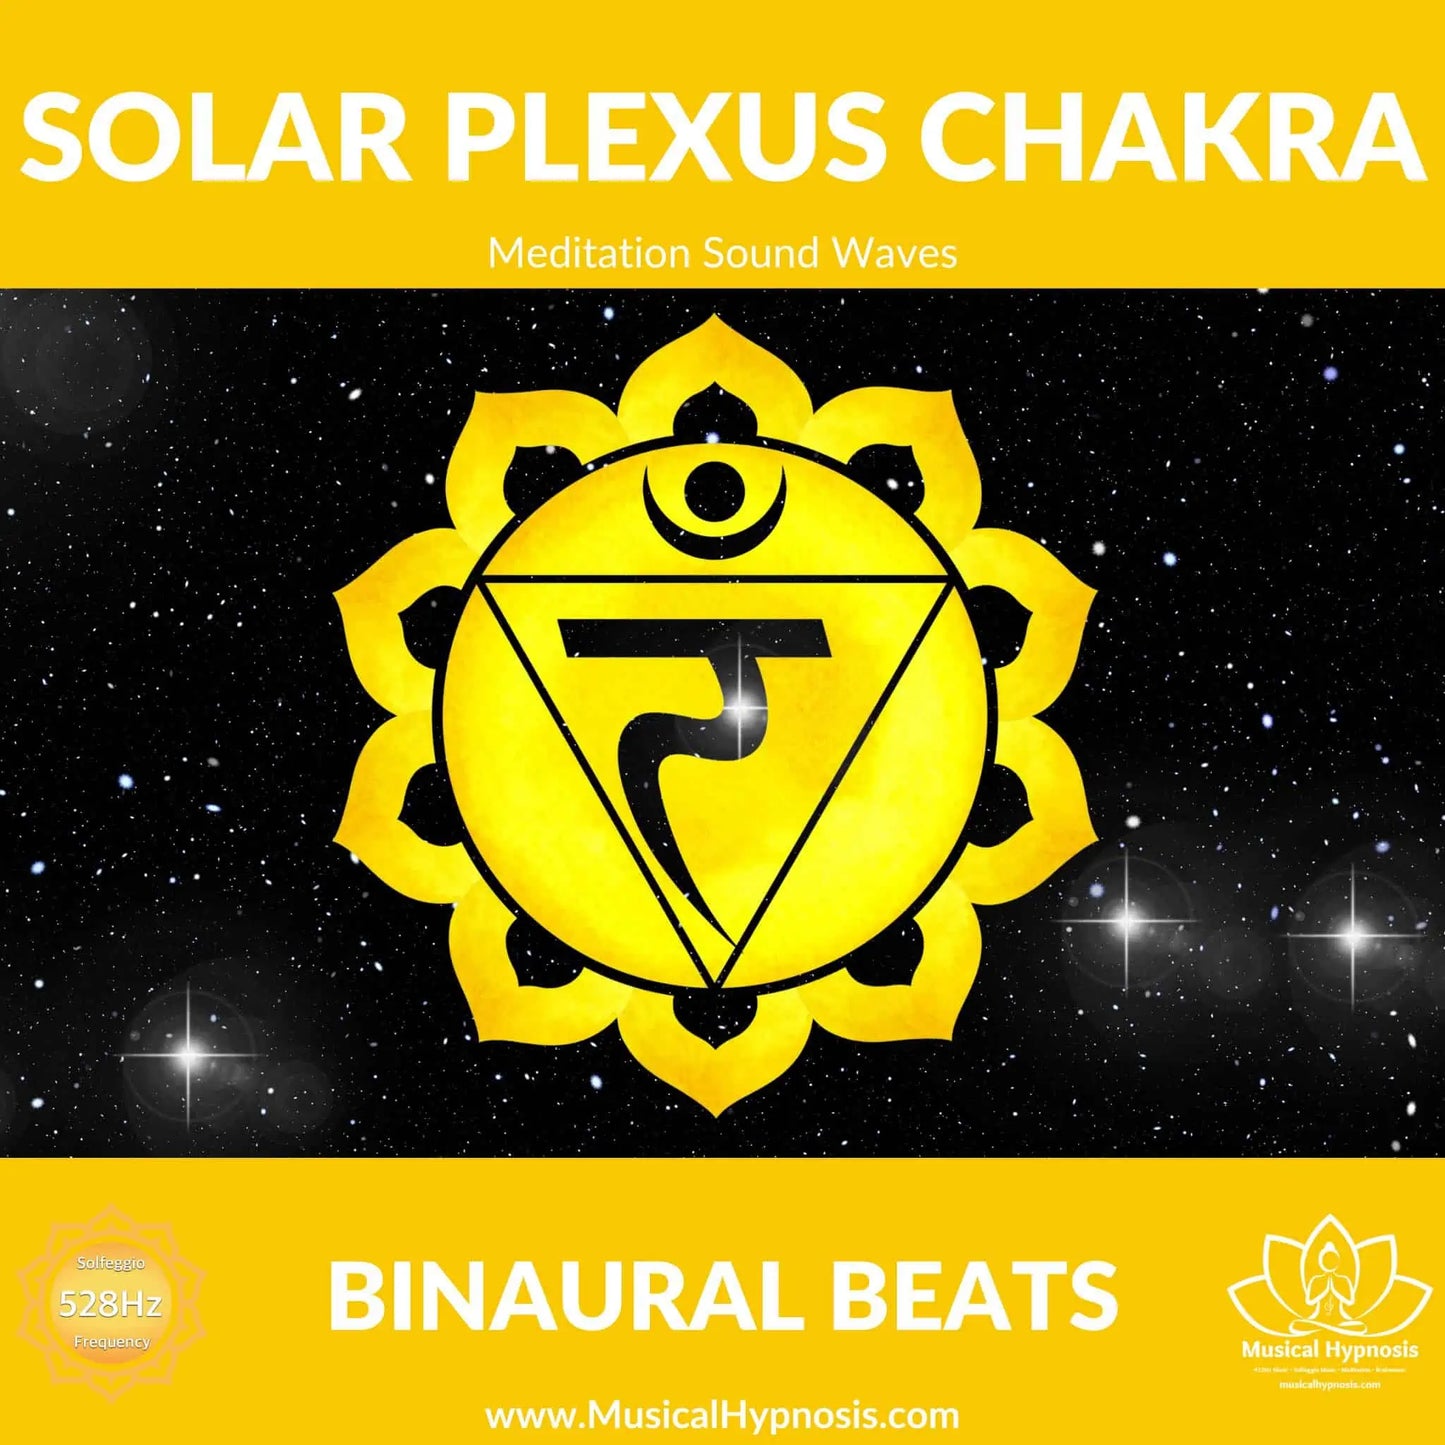 Solar Plexus Chakra Binaural Beats | 30 minutes